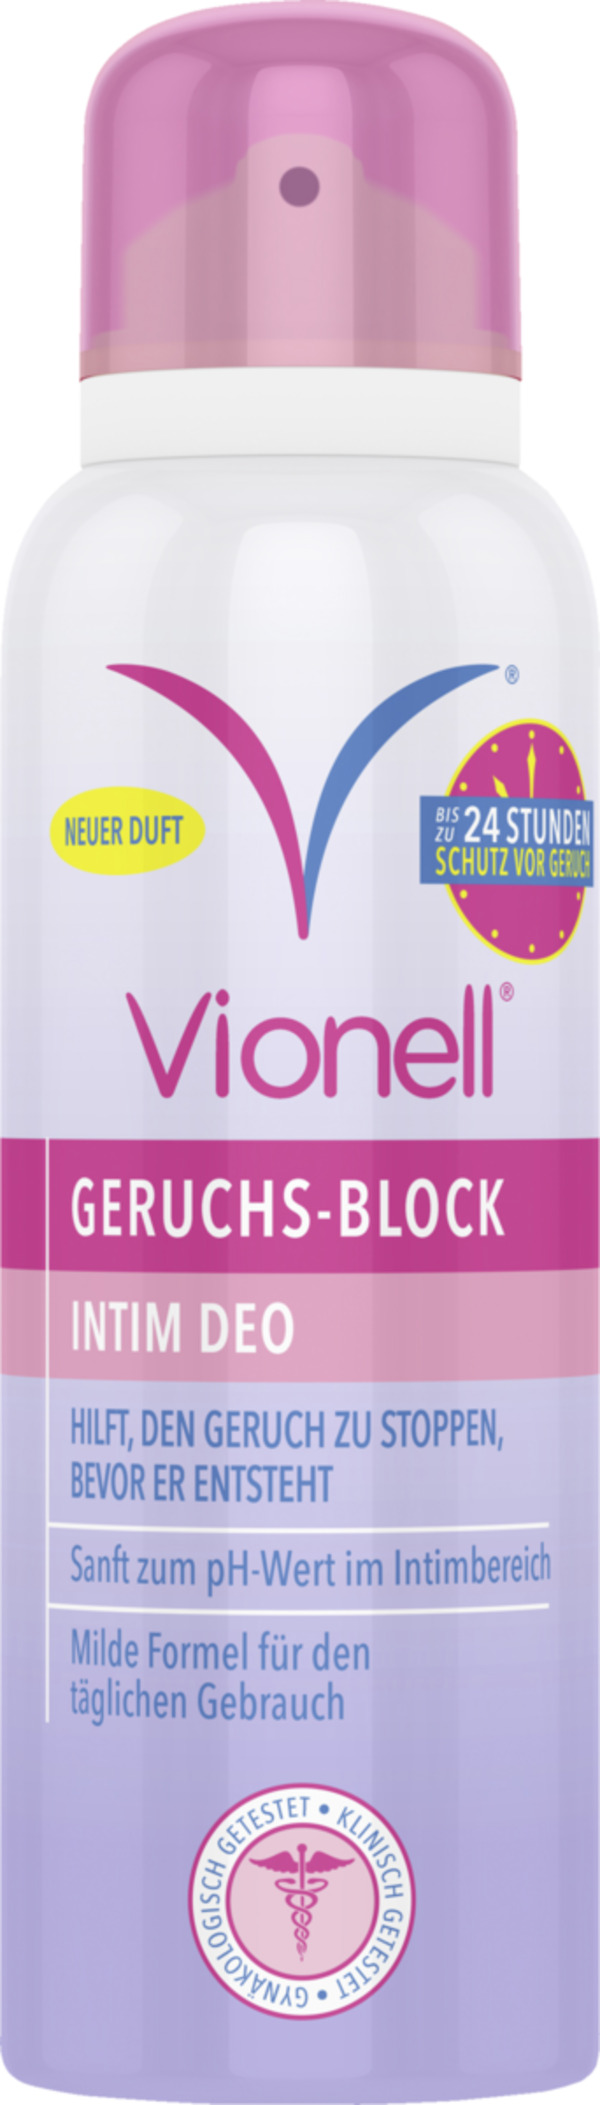 Bild 1 von Vionell Geruchs-Block Intim Deo